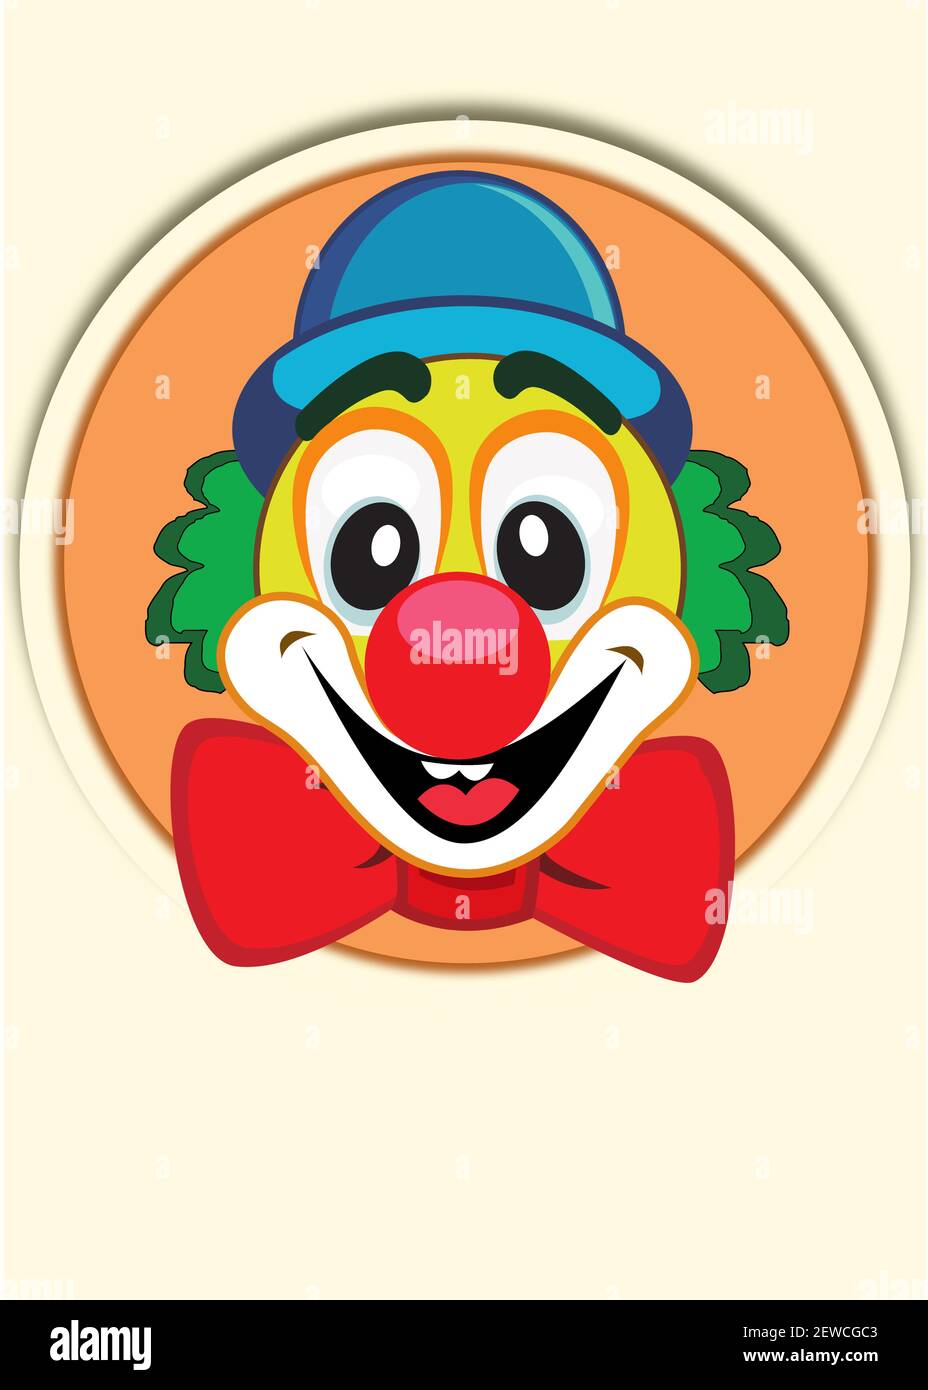 Ikone einer Nahaufnahme des Gesichts eines lachenden Clowns. Vektorgrafik Stock Vektor